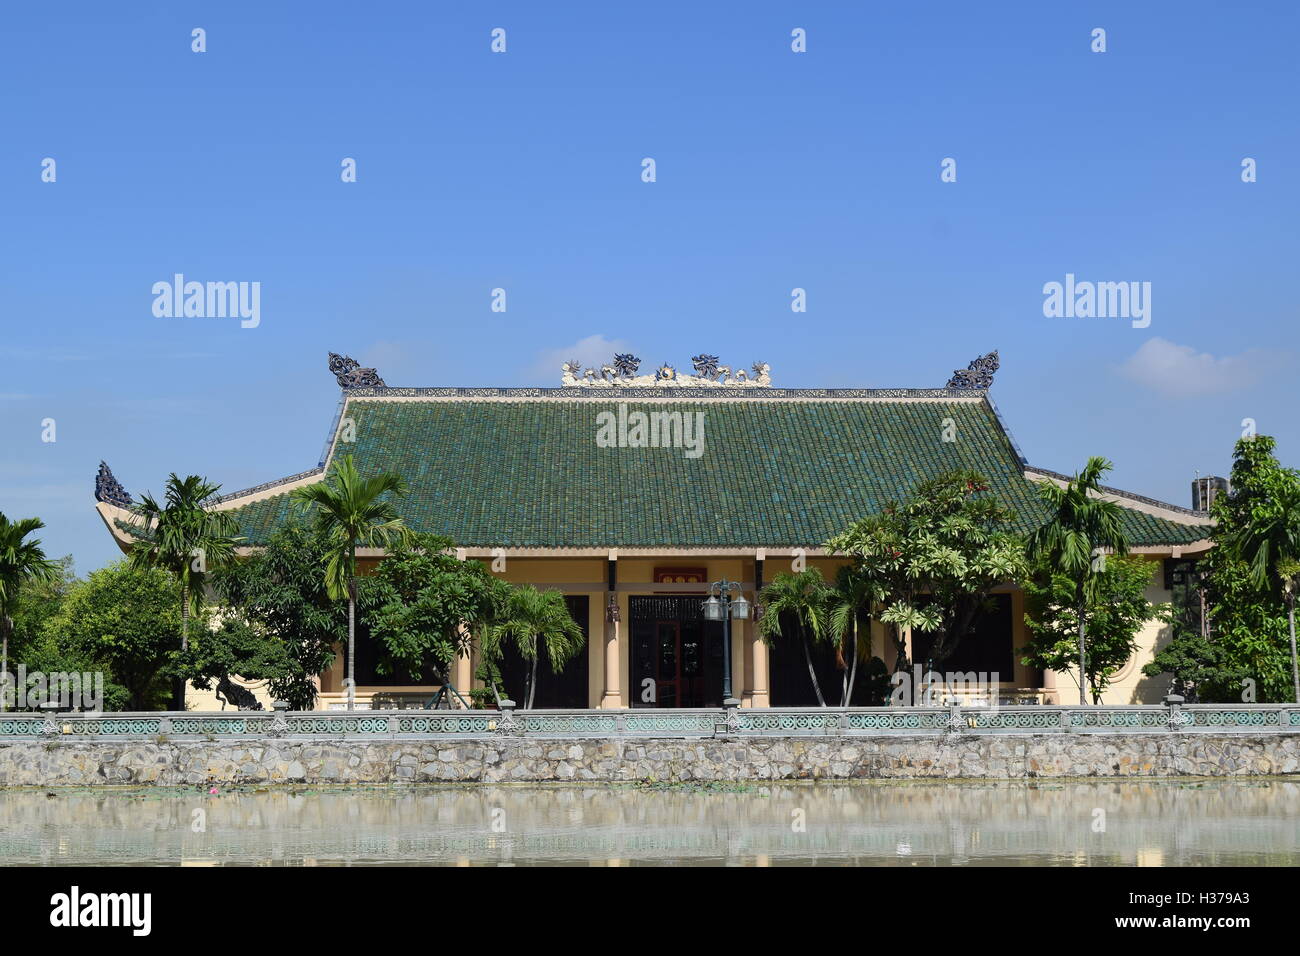 The Memorial of Literature Tran Bien temple in Dong Nai, vietnam Stock Photo